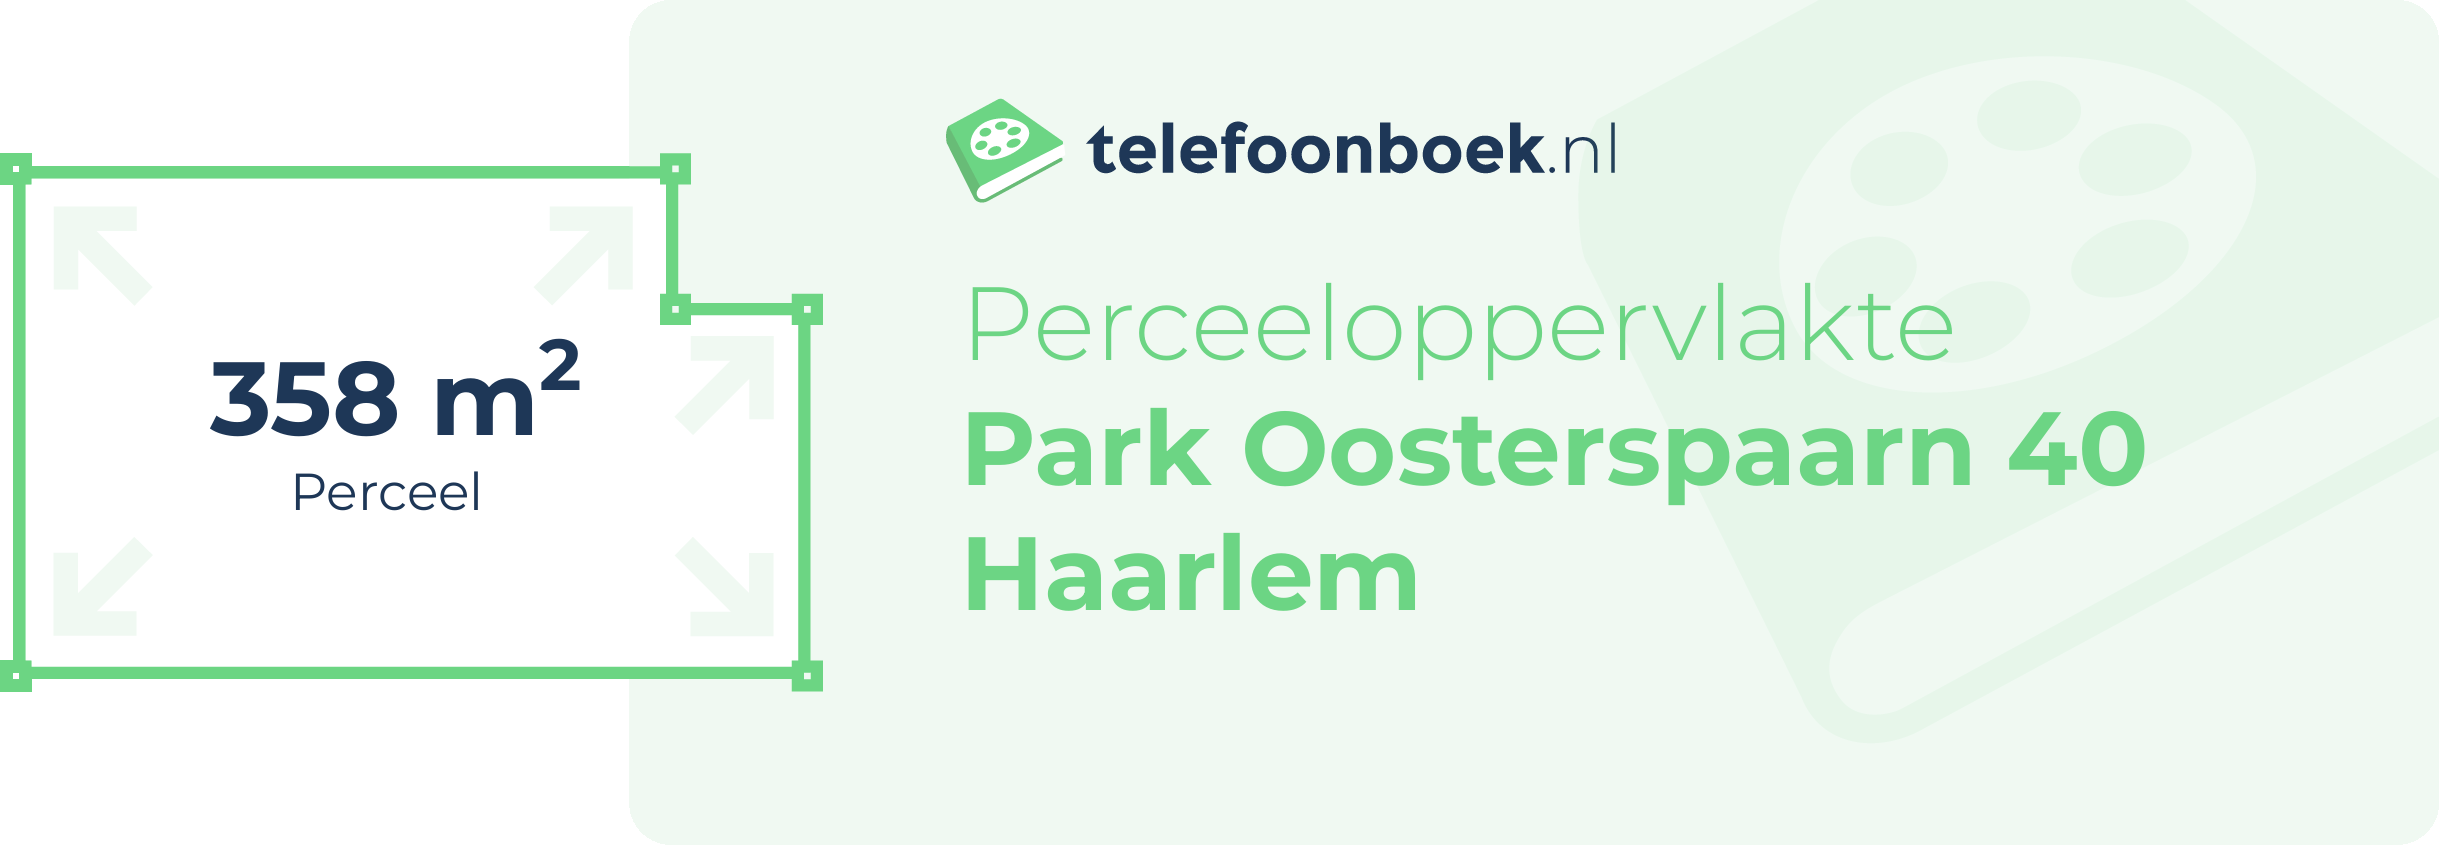 Perceeloppervlakte Park Oosterspaarn 40 Haarlem